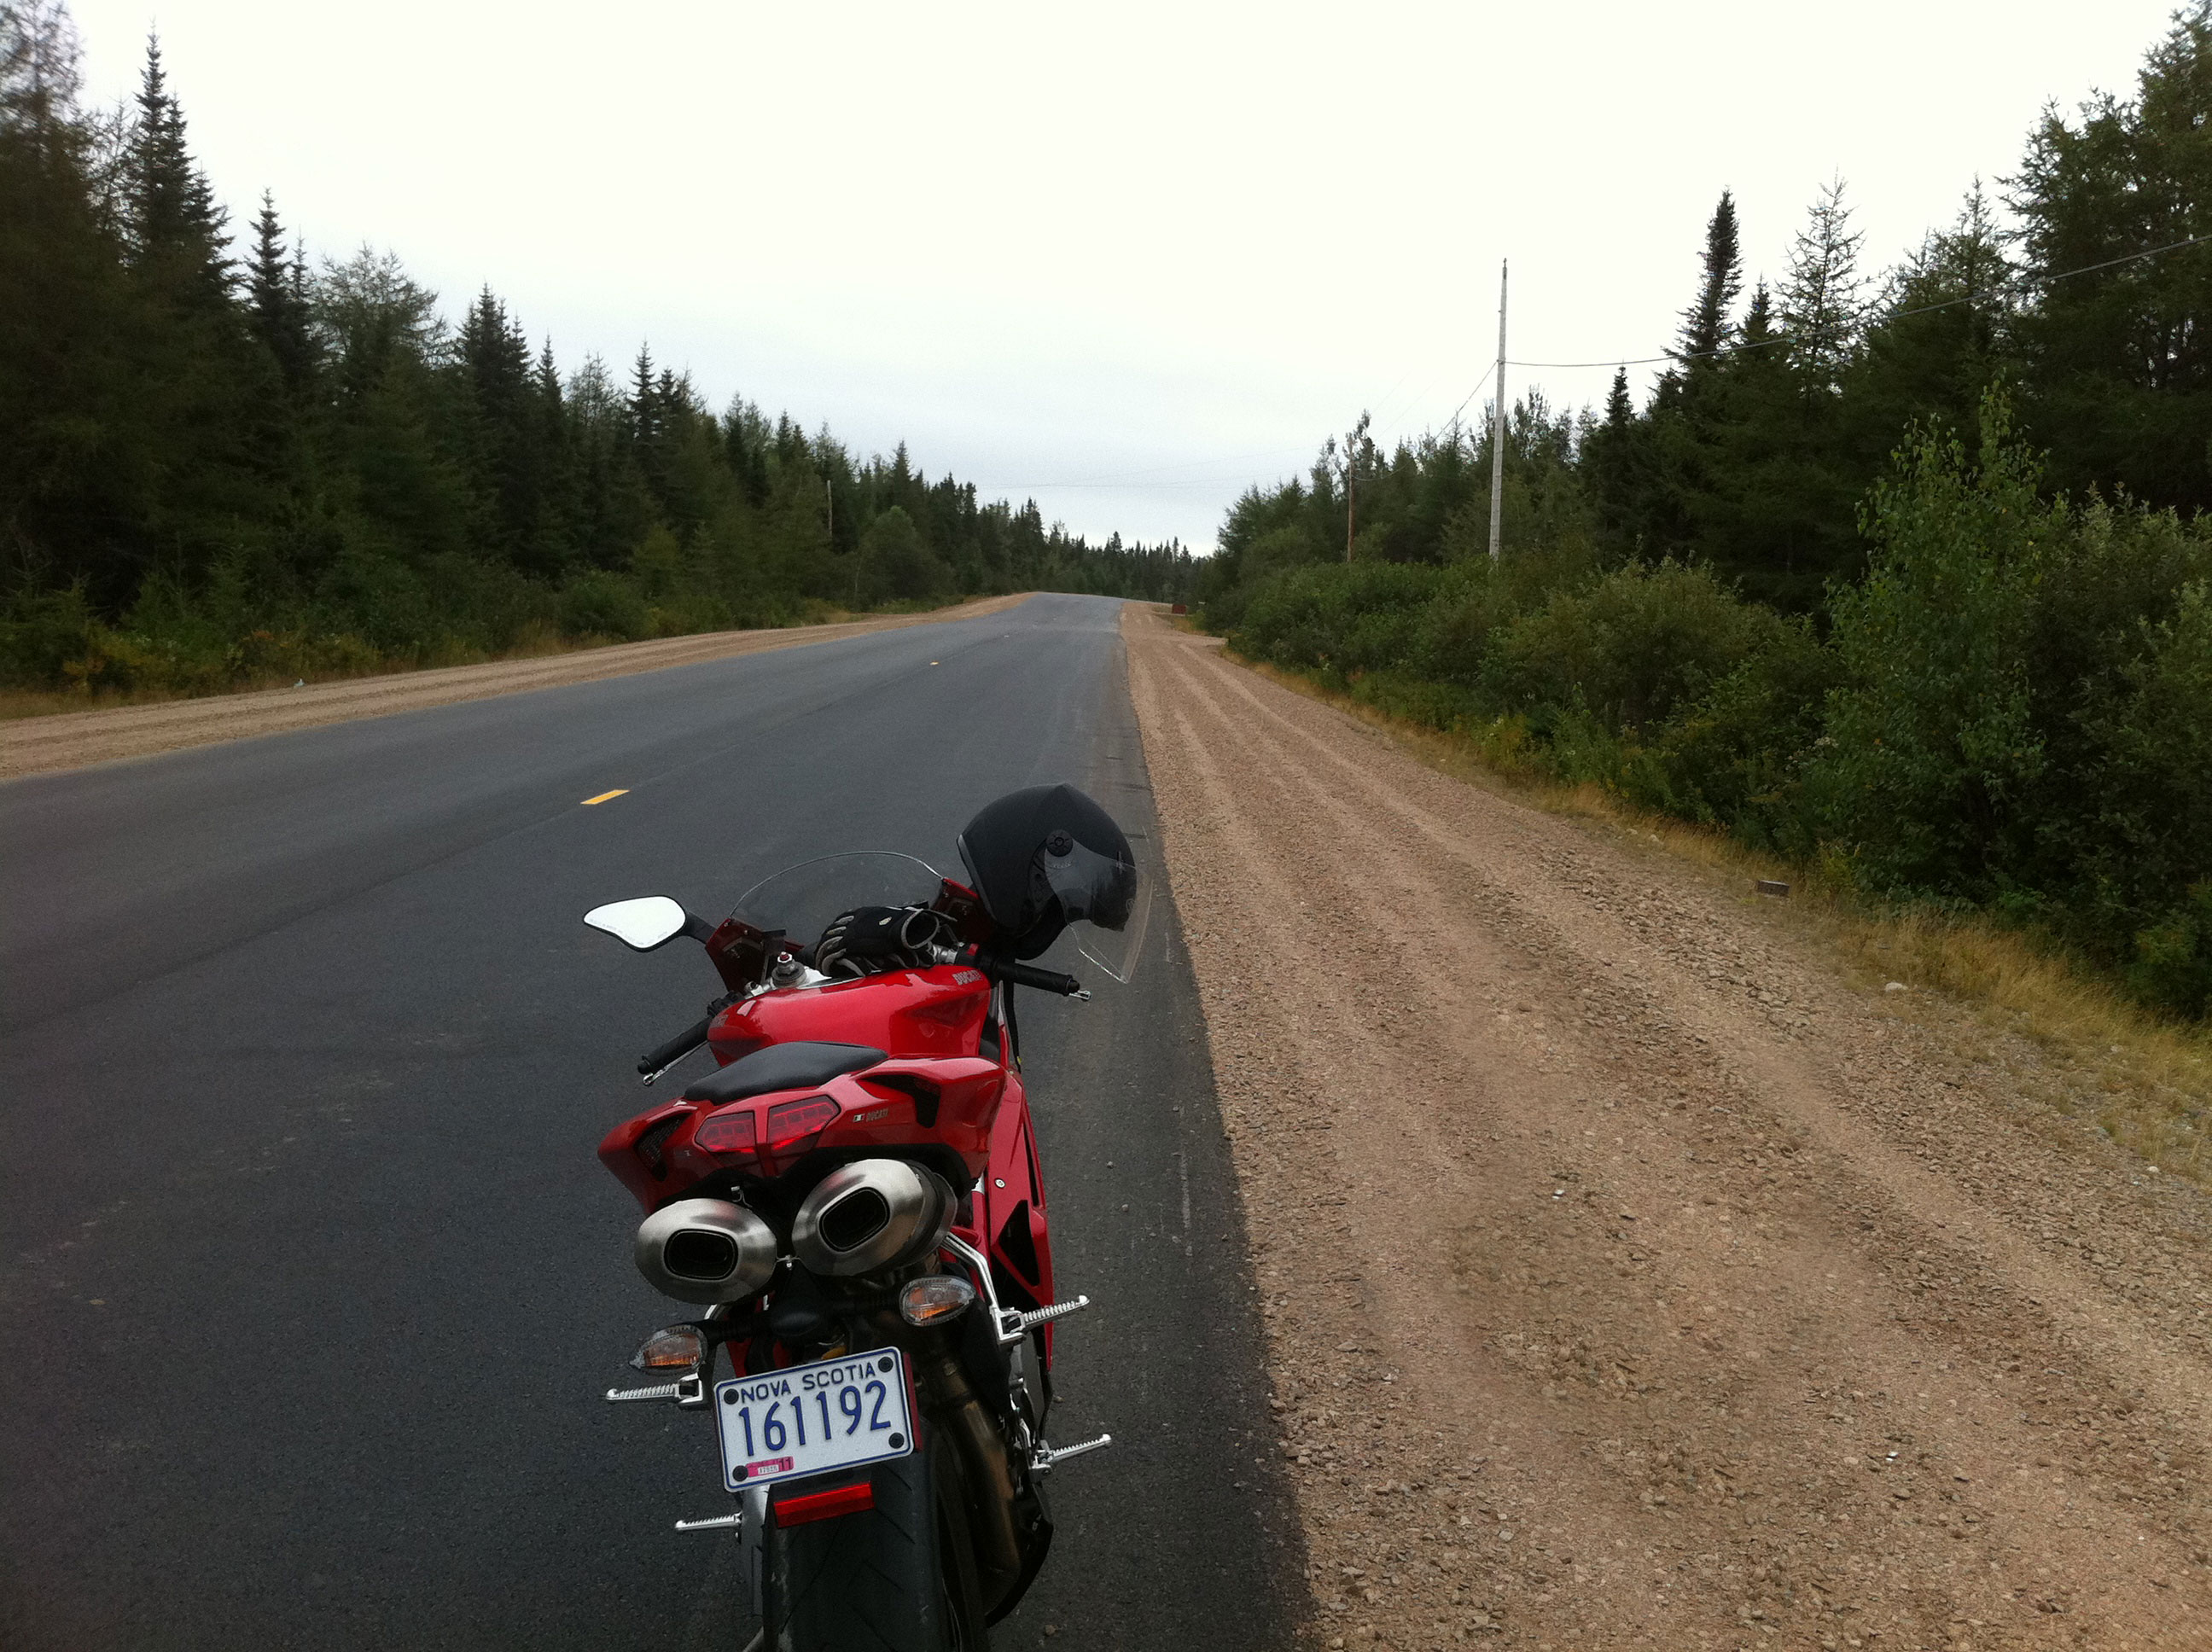 Ducati motorcycle on a long, open road